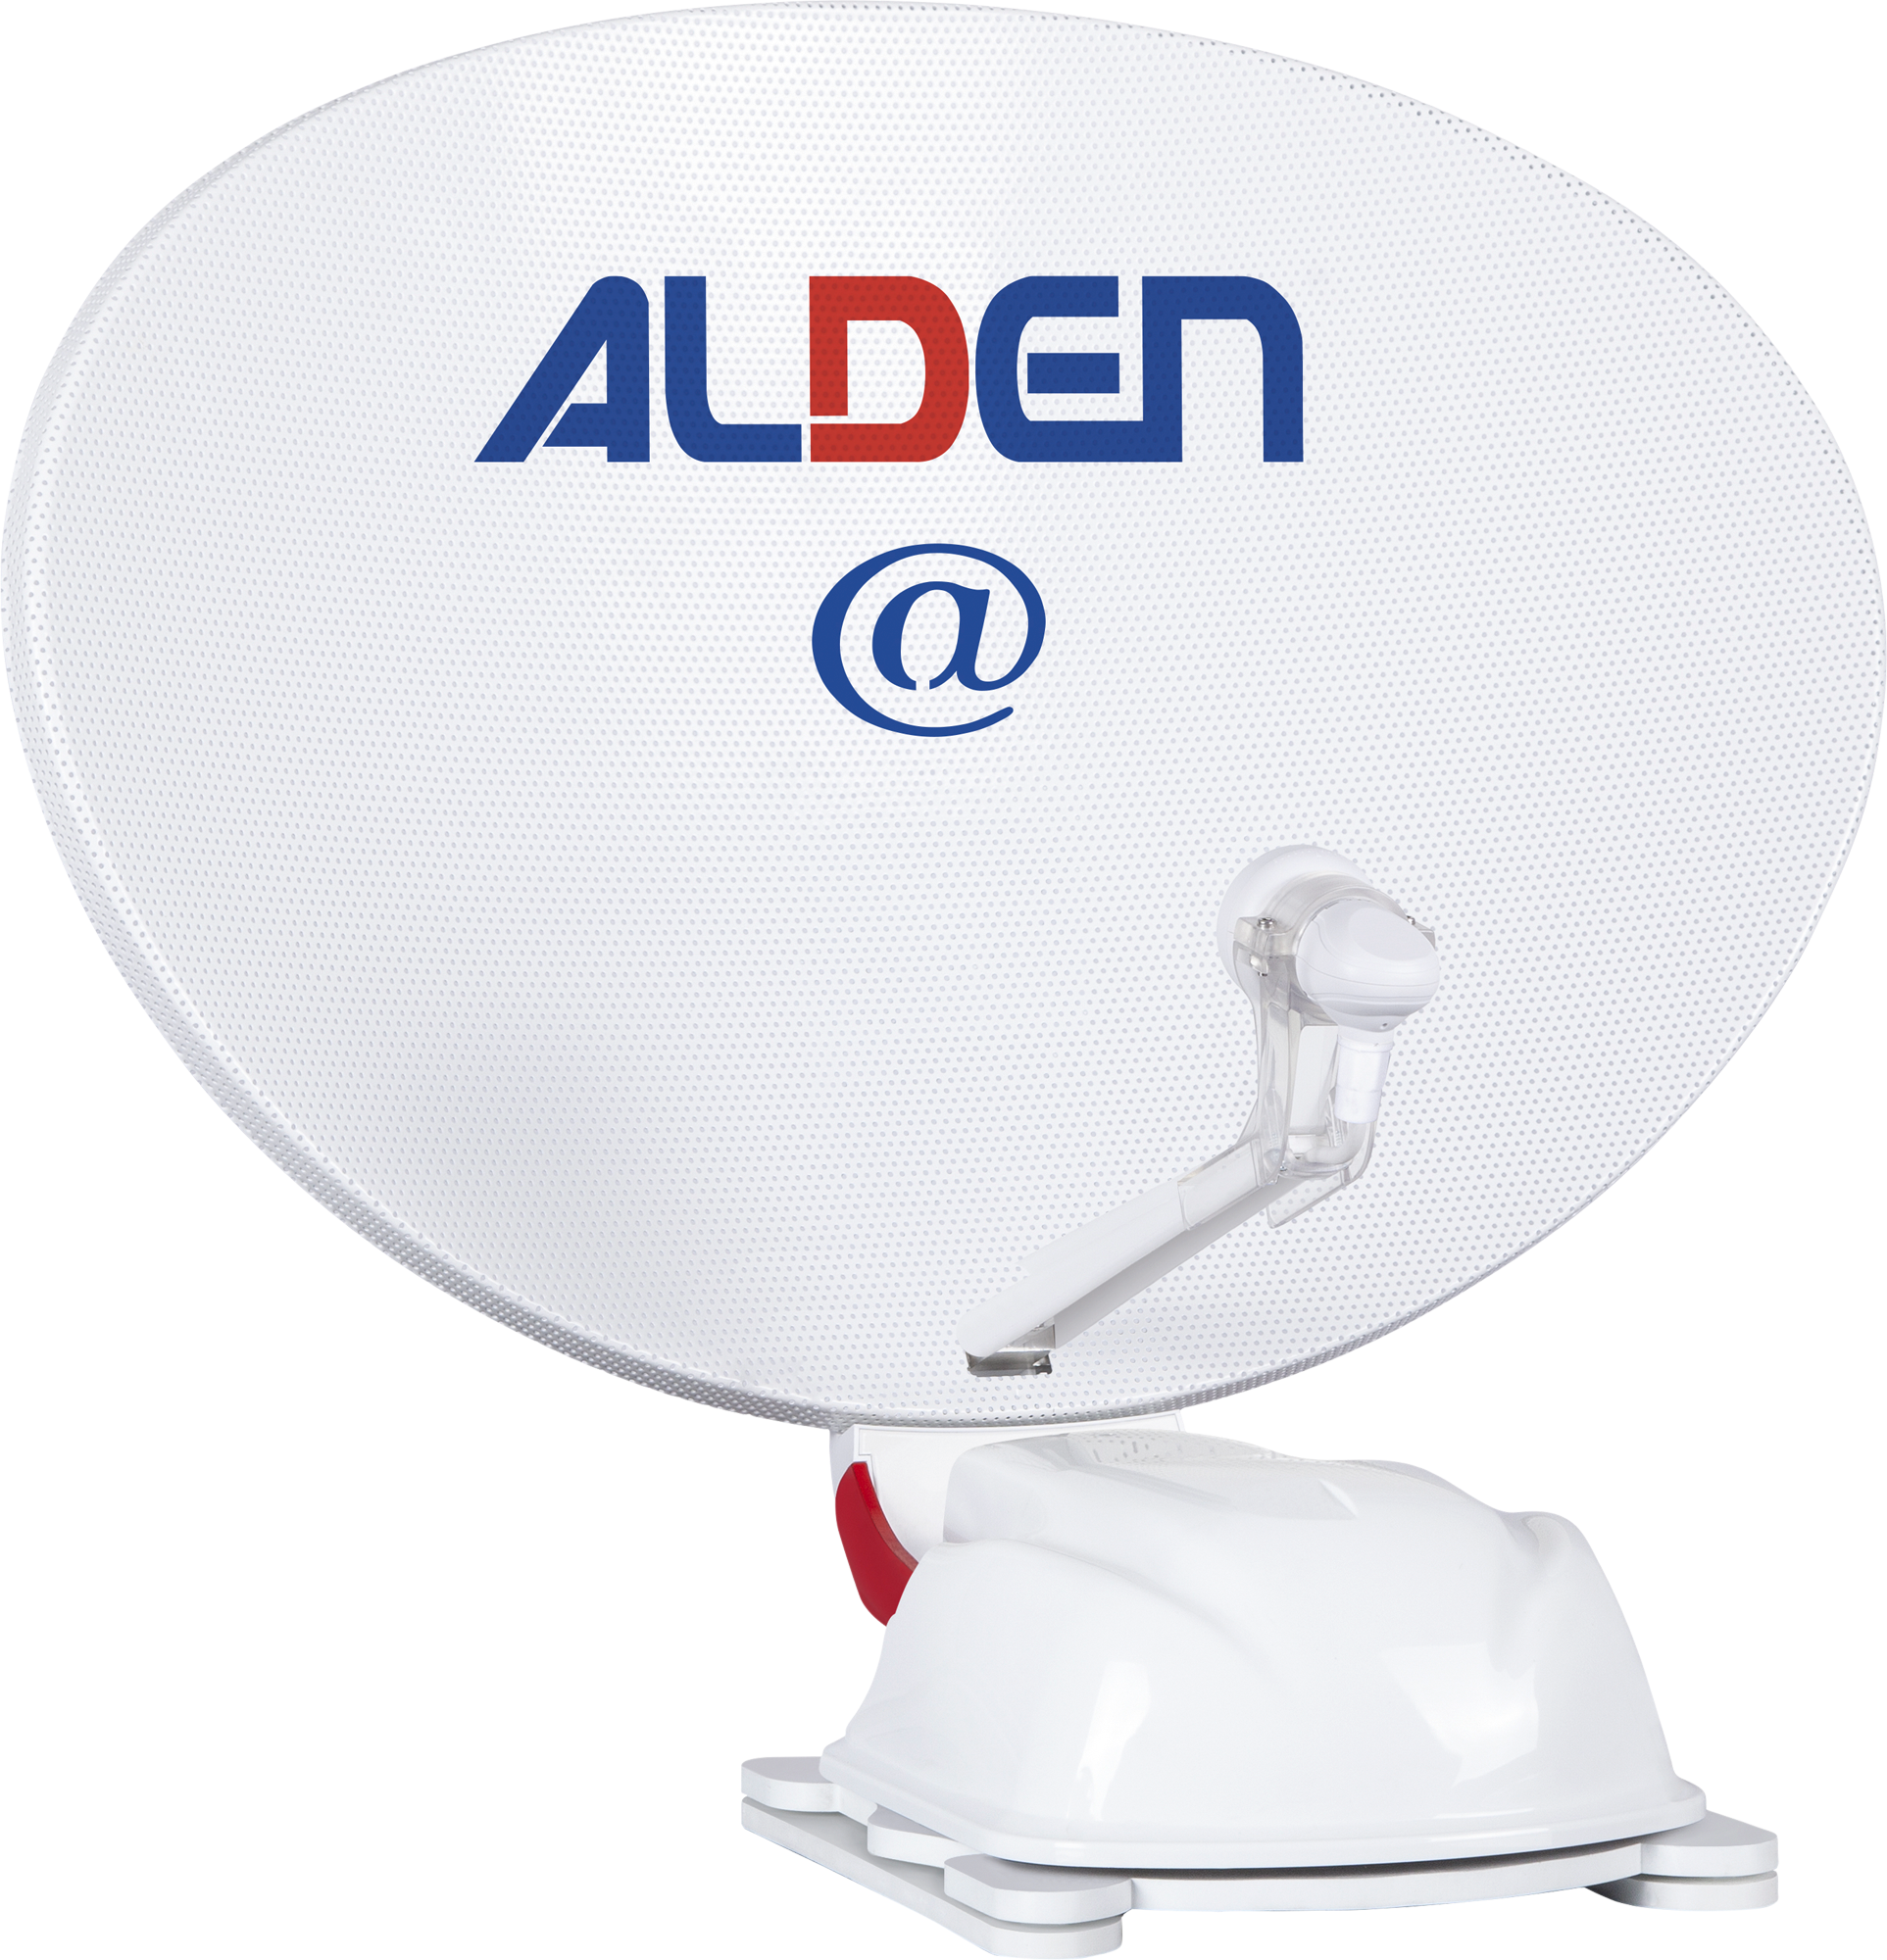 Alden AS2@ 80 HD Ultrawhite vollautomatische Satellitenanlage inklusive LTE Antenne und A.I.O. Smart TV mit integriertem Receiver und Antennensteuerung 24 Zoll